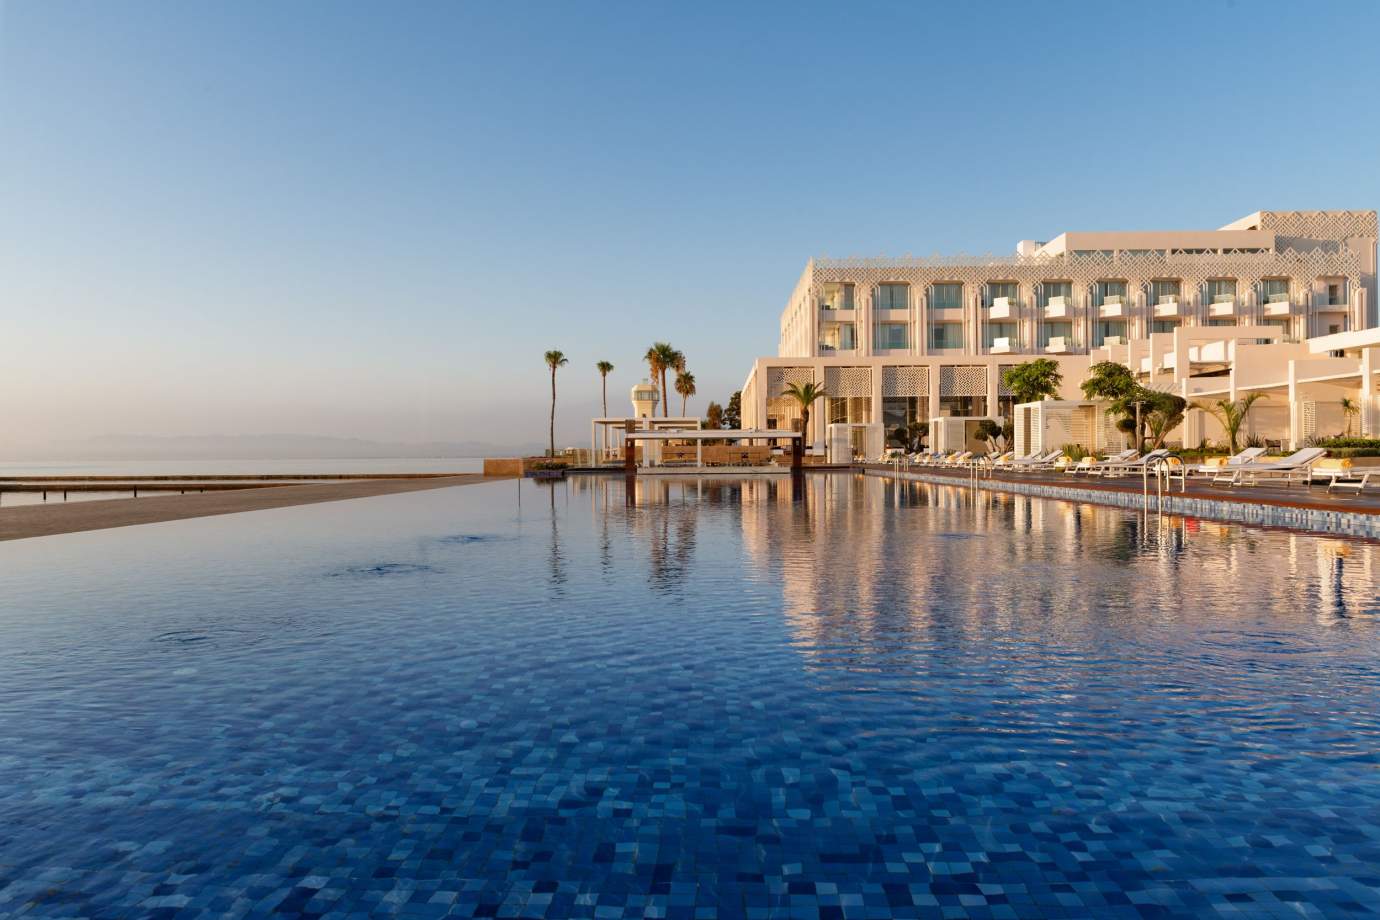 Hôtels 5 étoiles à Maroc tout compris